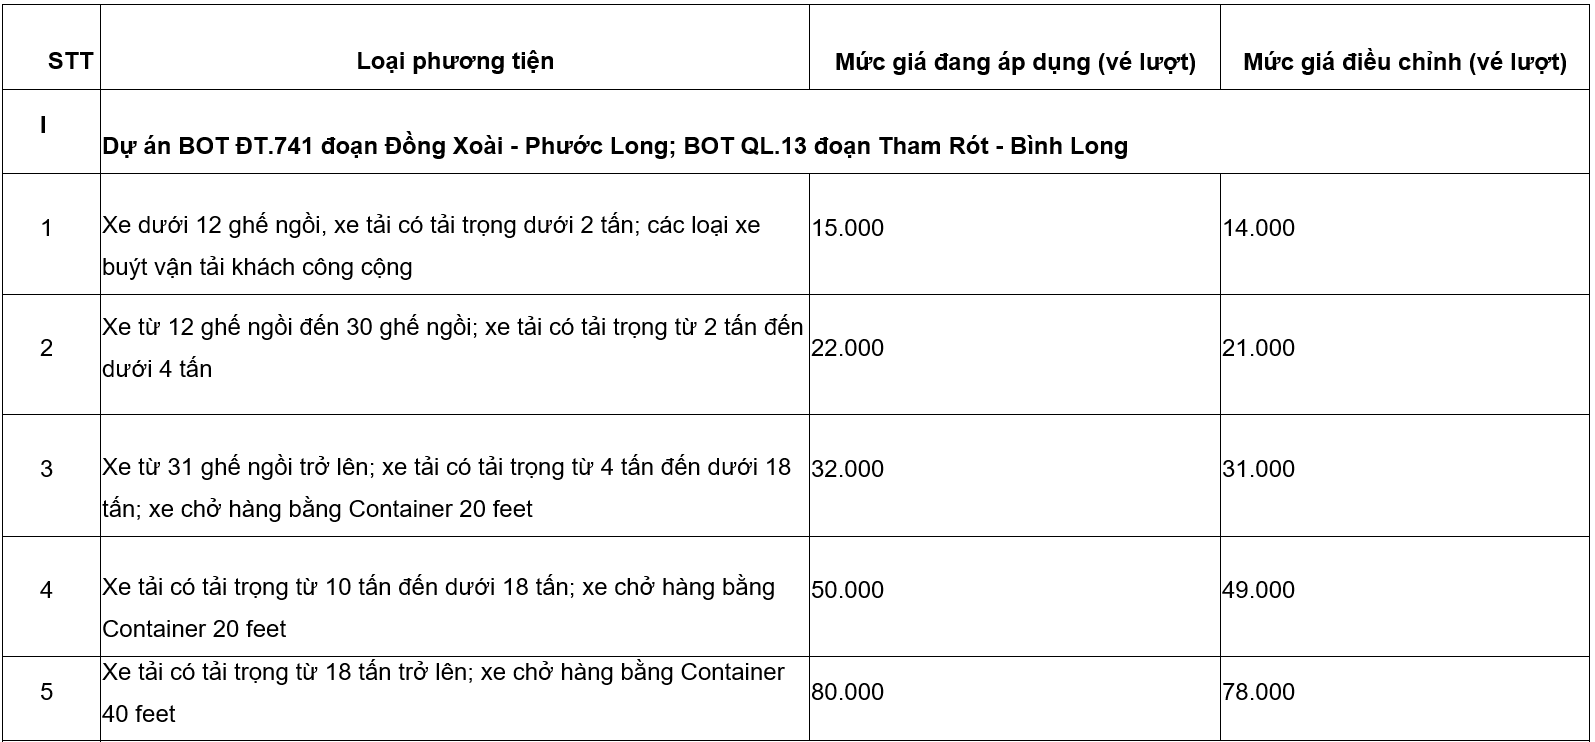 Giảm giá vé dịch vụ sử dụng đường bộ tại các dự án BOT thuộc thẩm quyền quản lý của UBND tỉnh Bình Phước